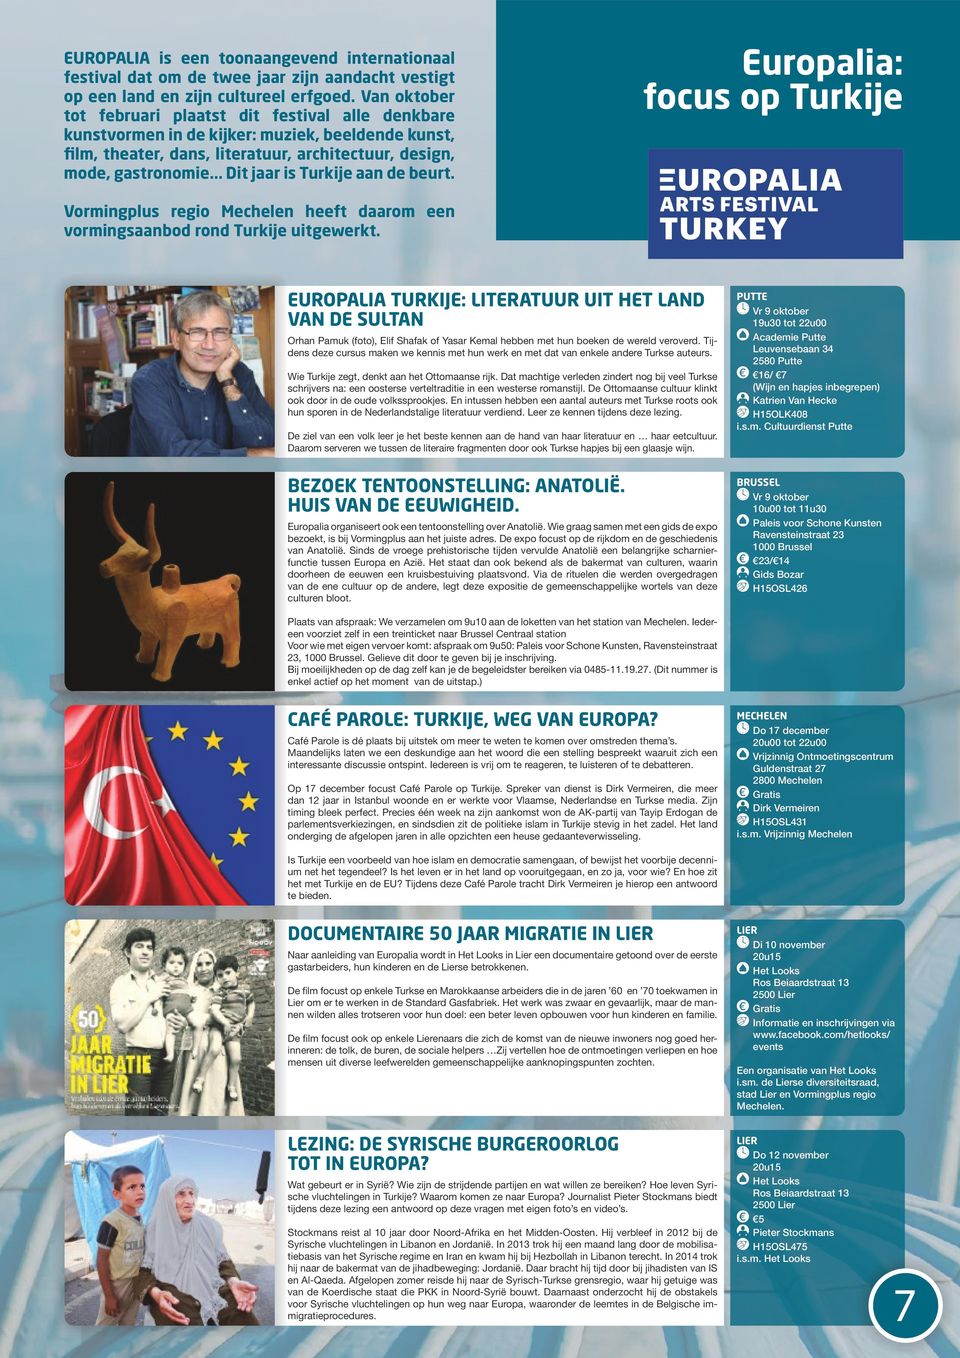 .. Dit jaar is Turkije aan de beurt. Europalia: focus op Turkije Vormingplus regio Mechelen heeft daarom een vormingsaanbod rond Turkije uitgewerkt.